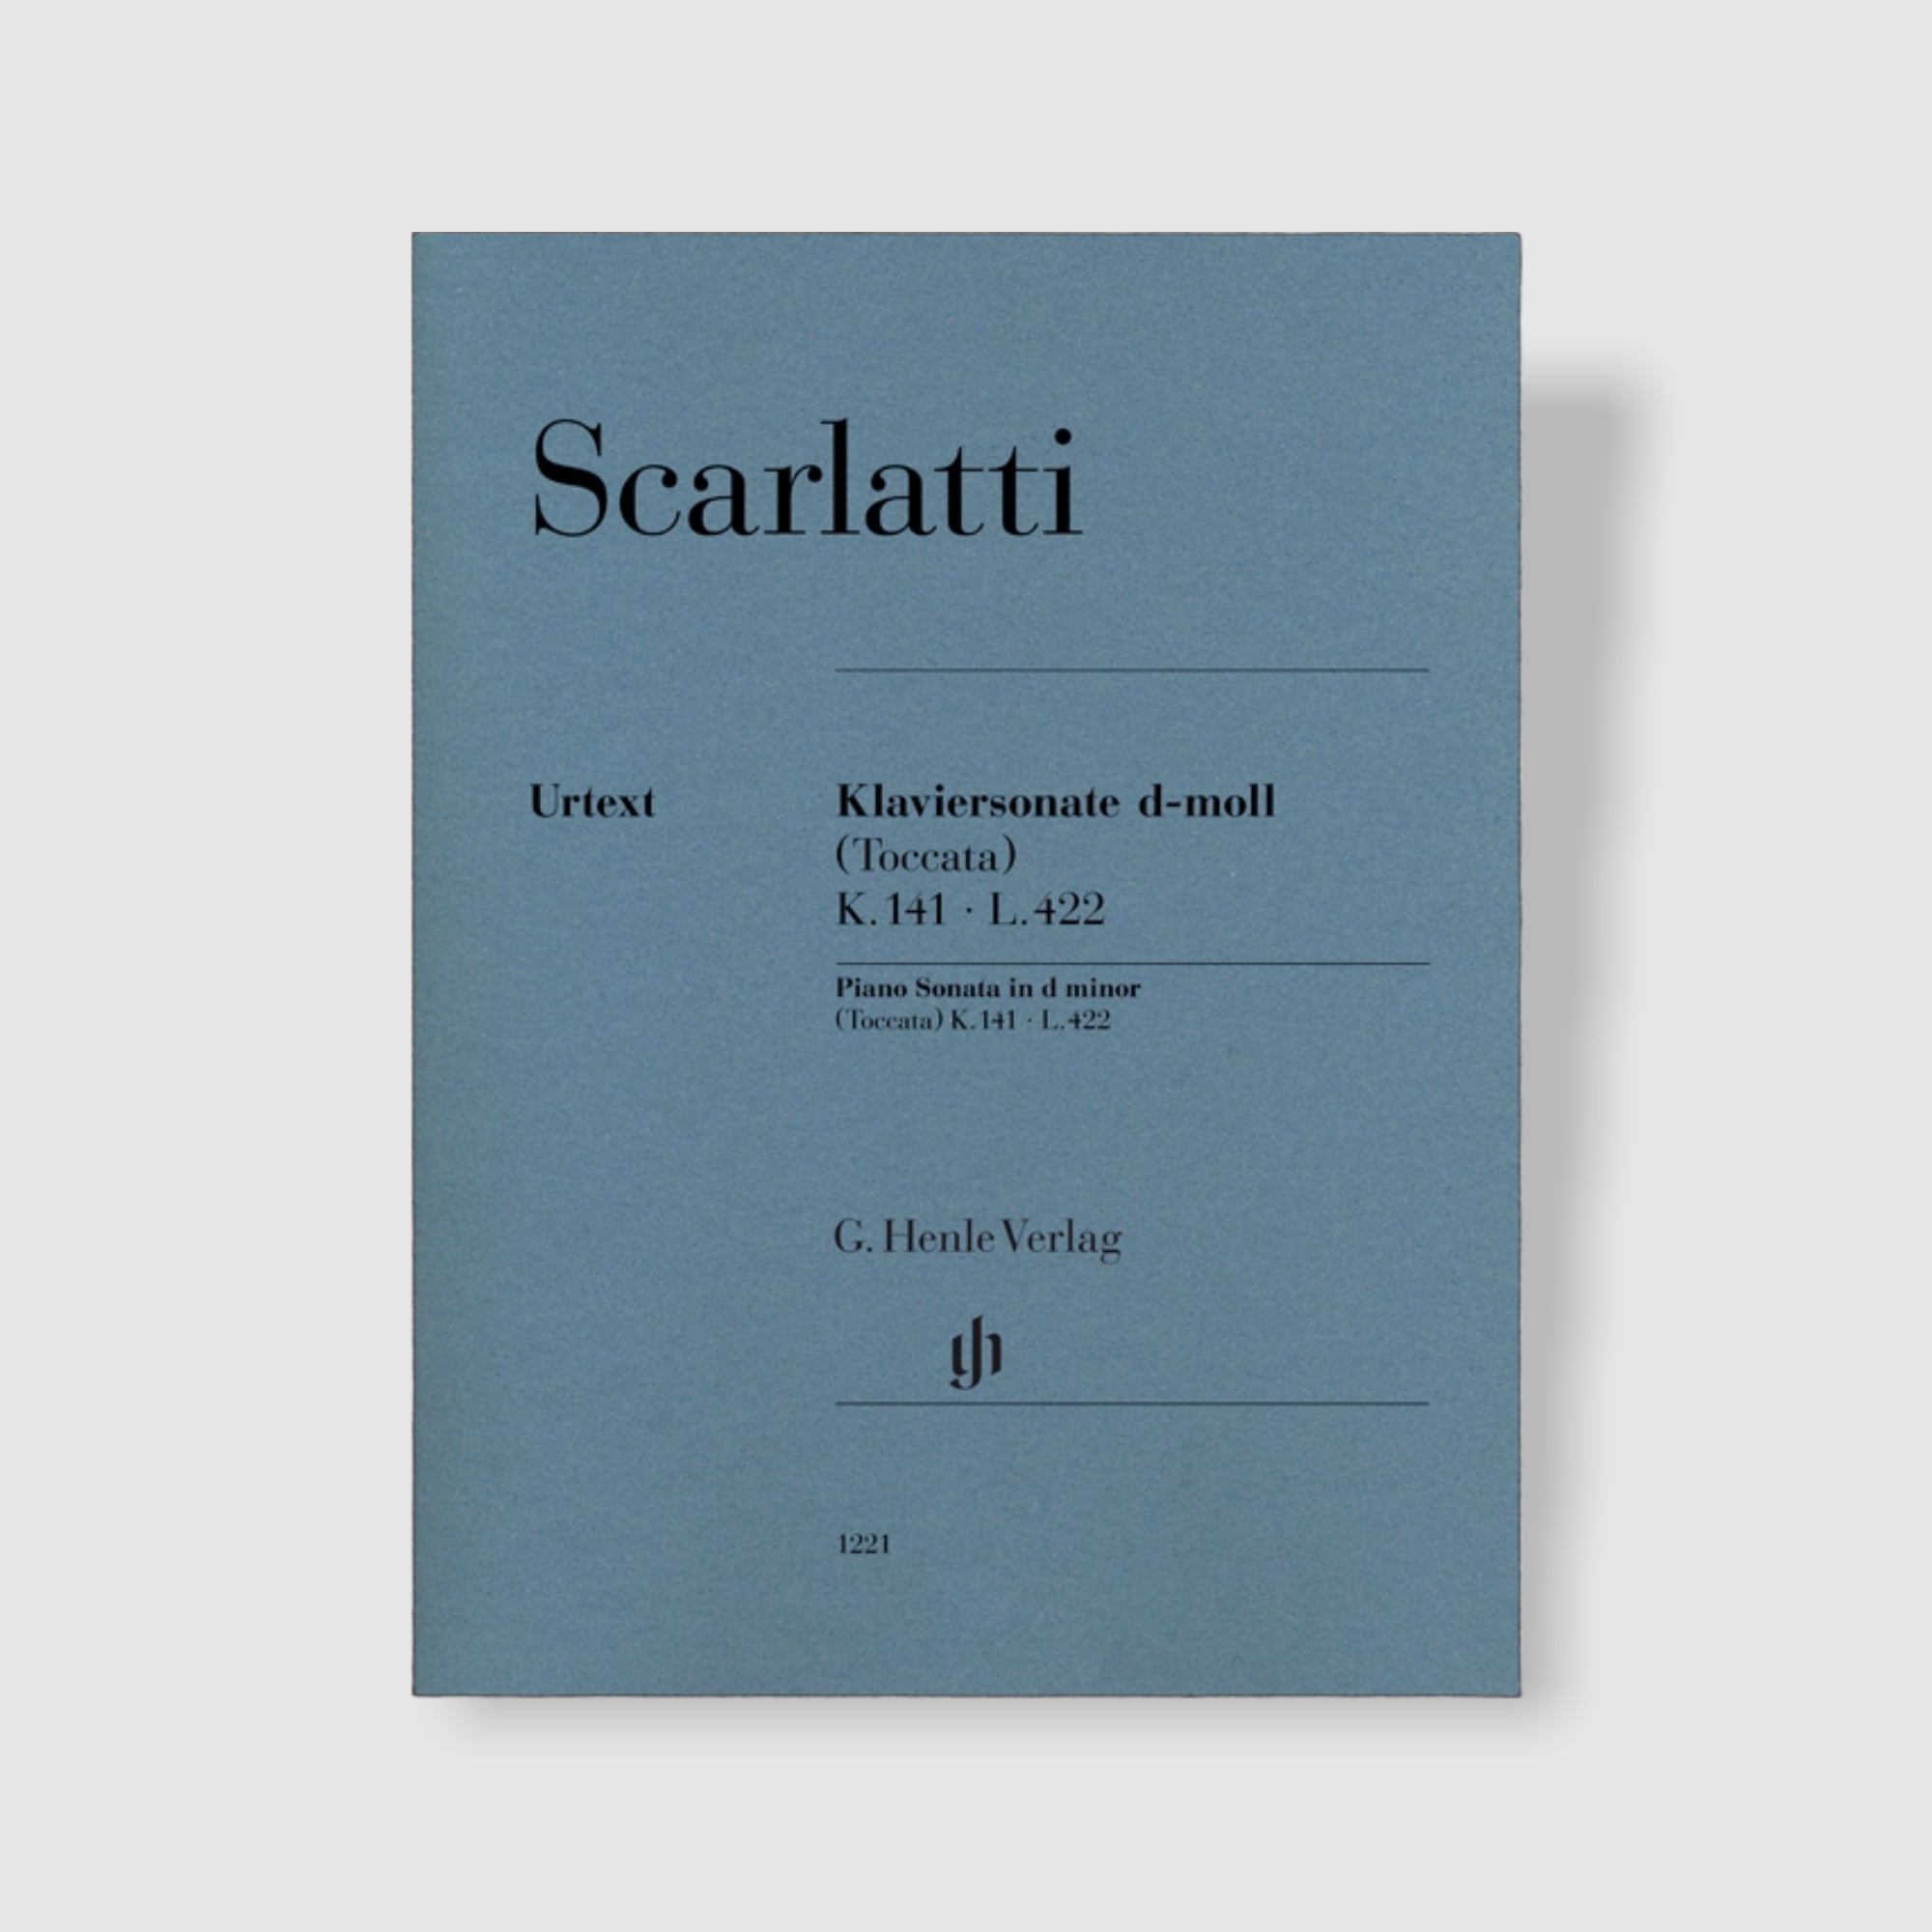 스카를라티 피아노 소나타 in d minor, (Toccata) K. 141, L. 422